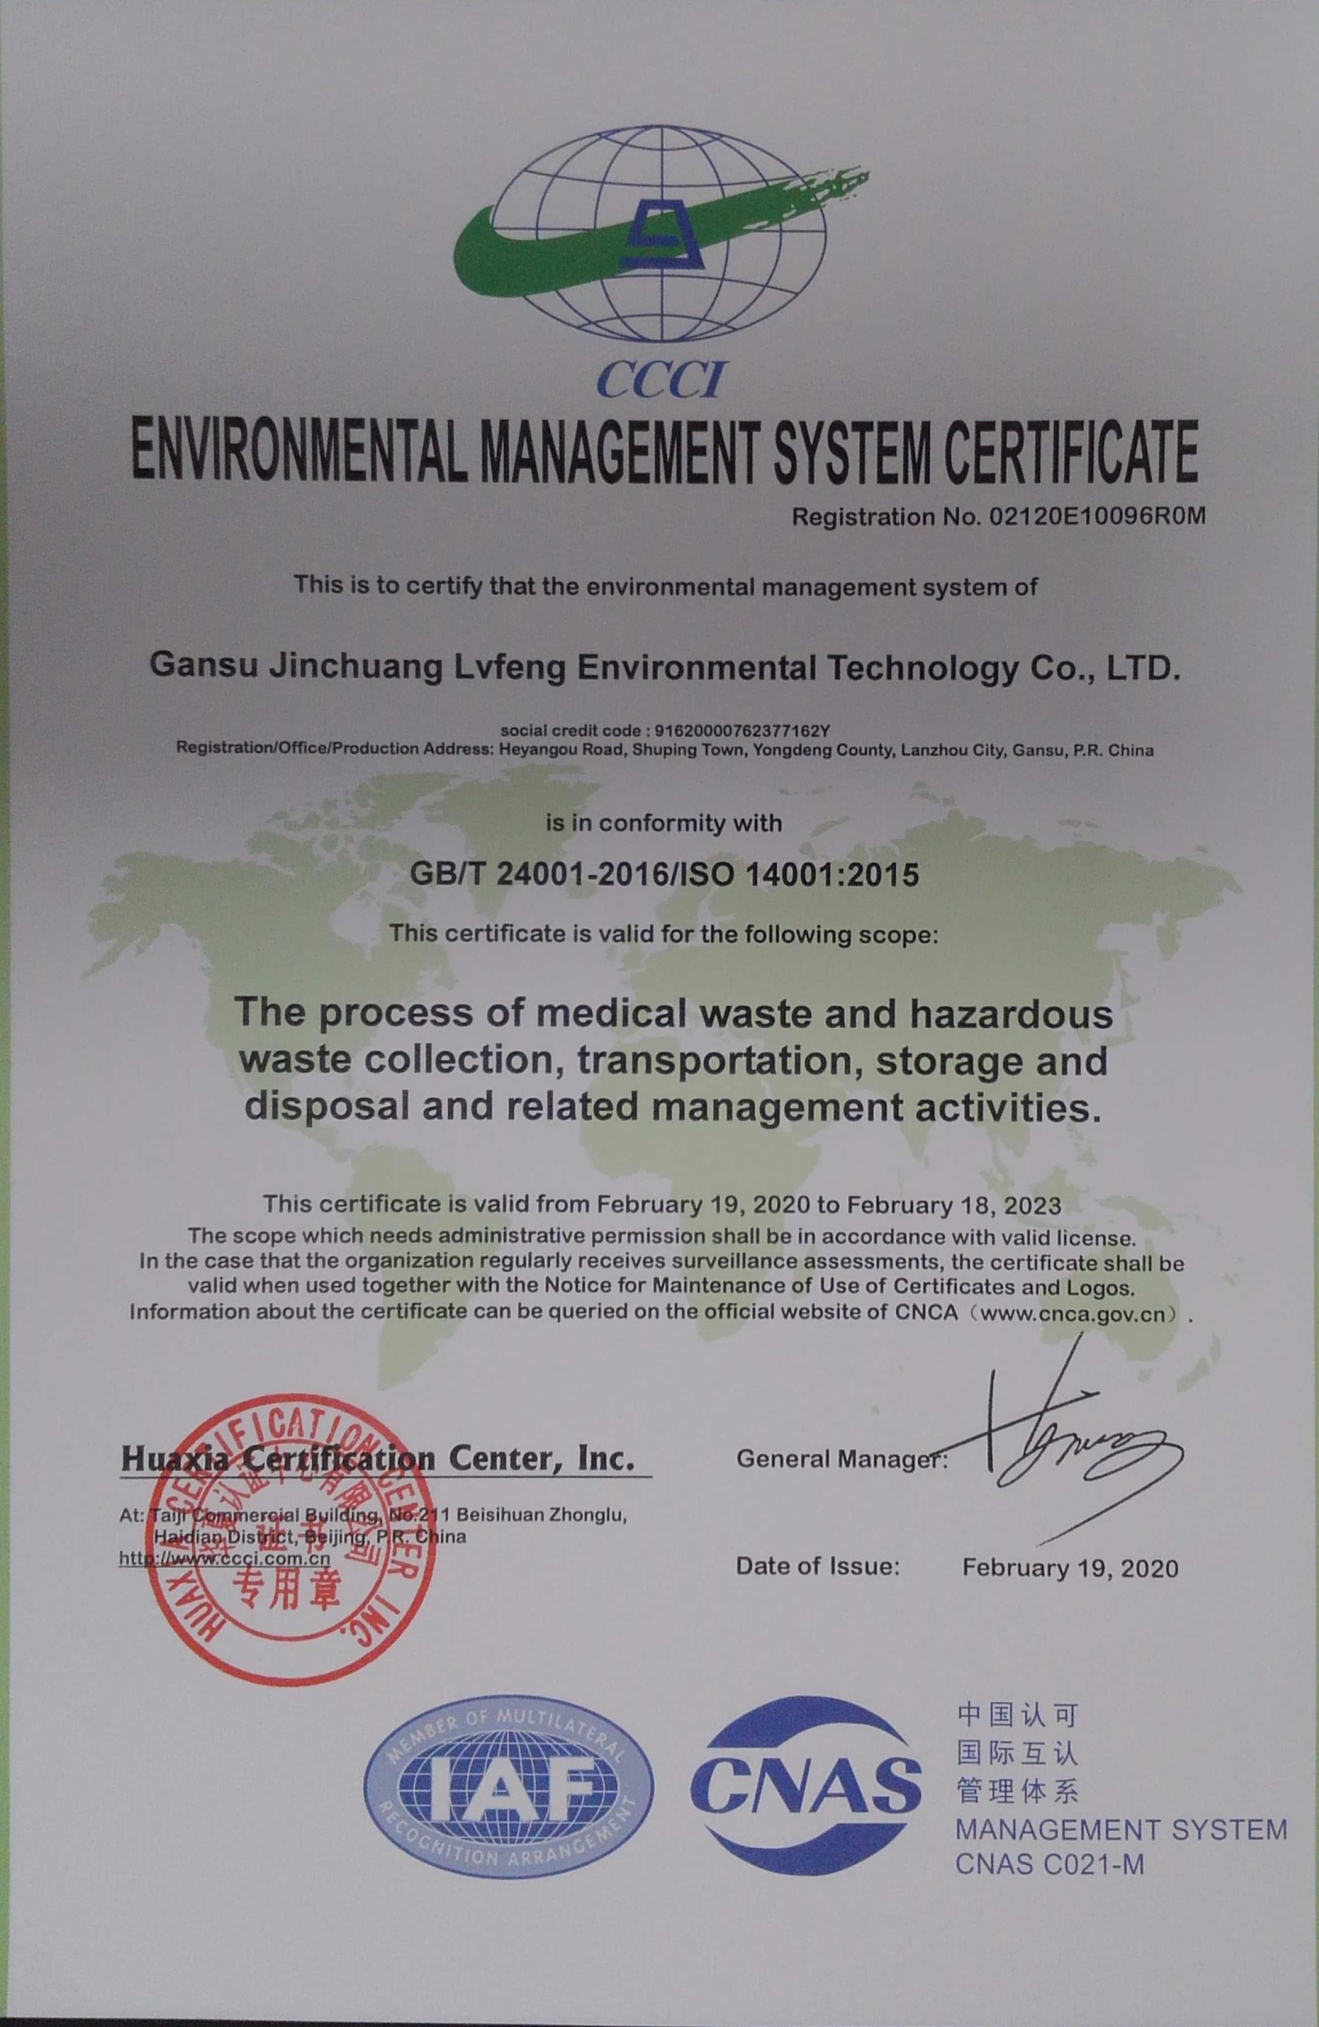 甘肃金创绿丰环境技术有限公司环境管理体系认证证书2_看图王.jpg